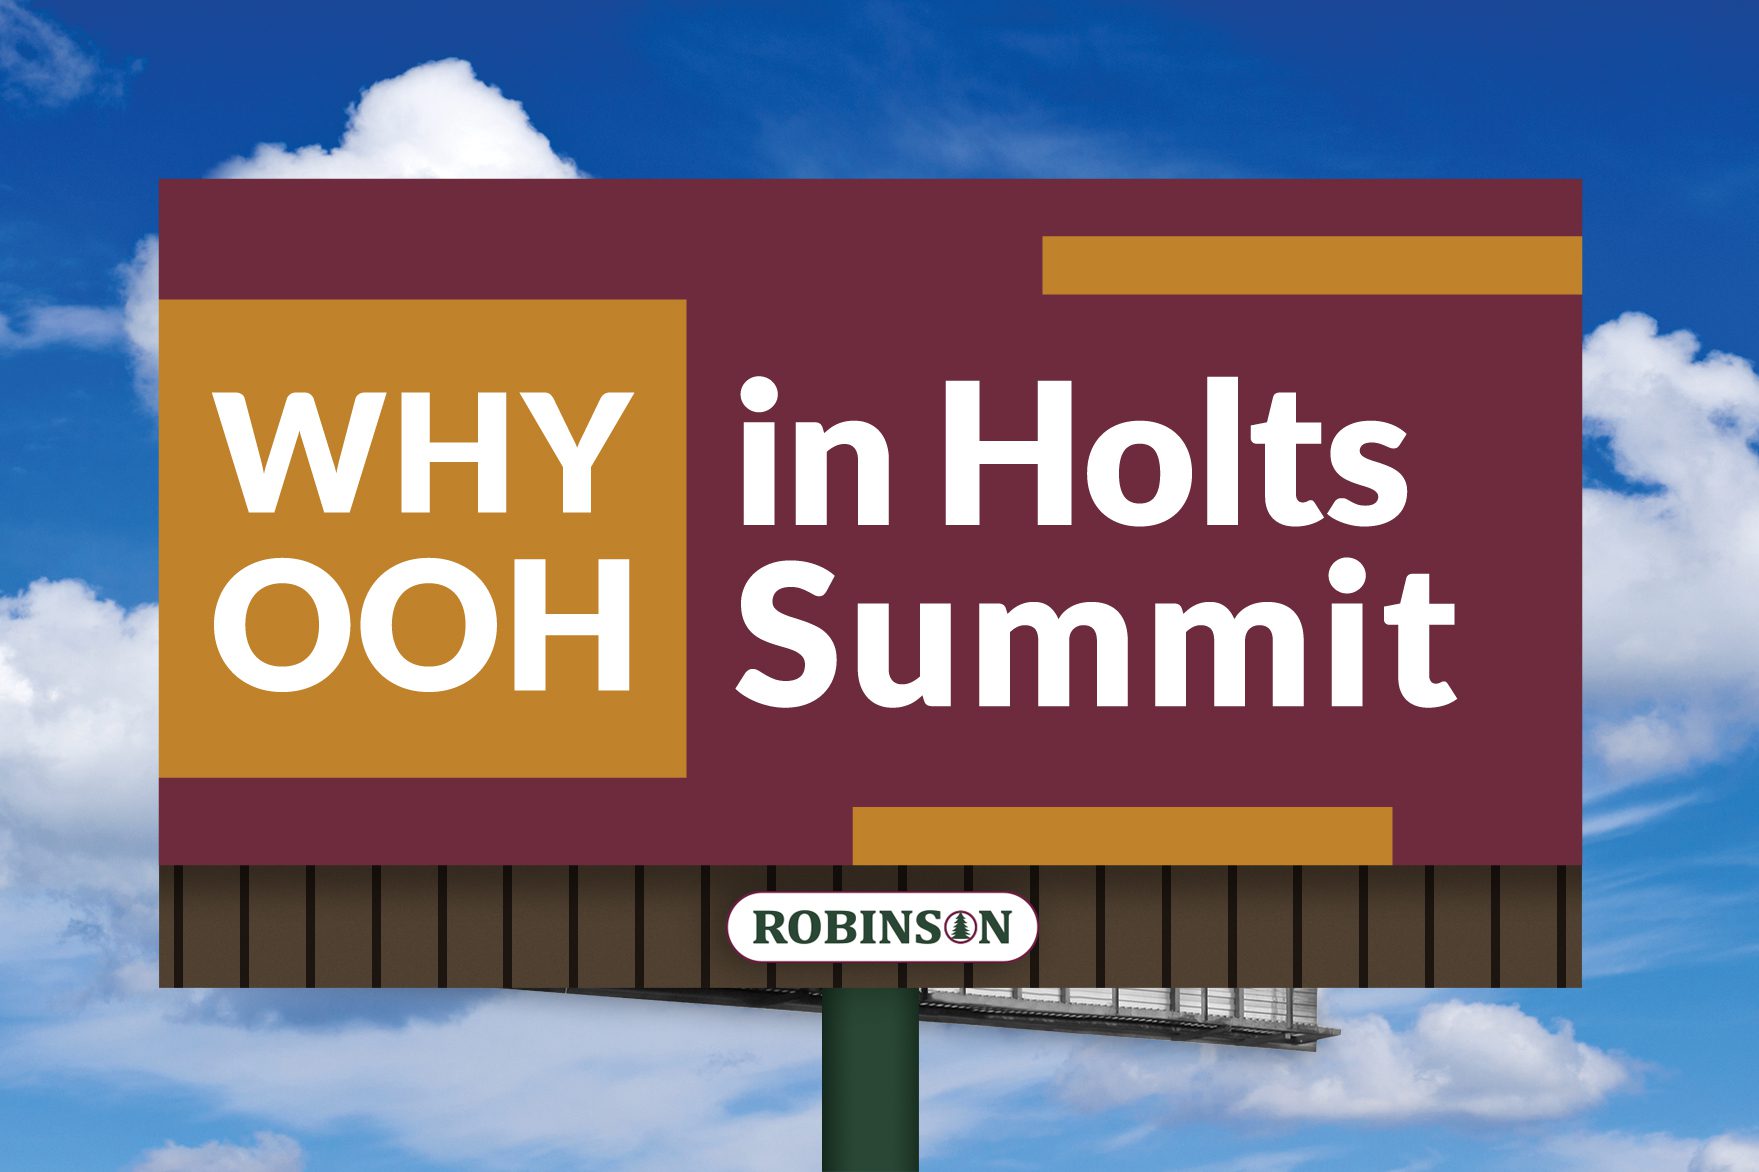 Holts Summit, Missouri digital billboard advertising